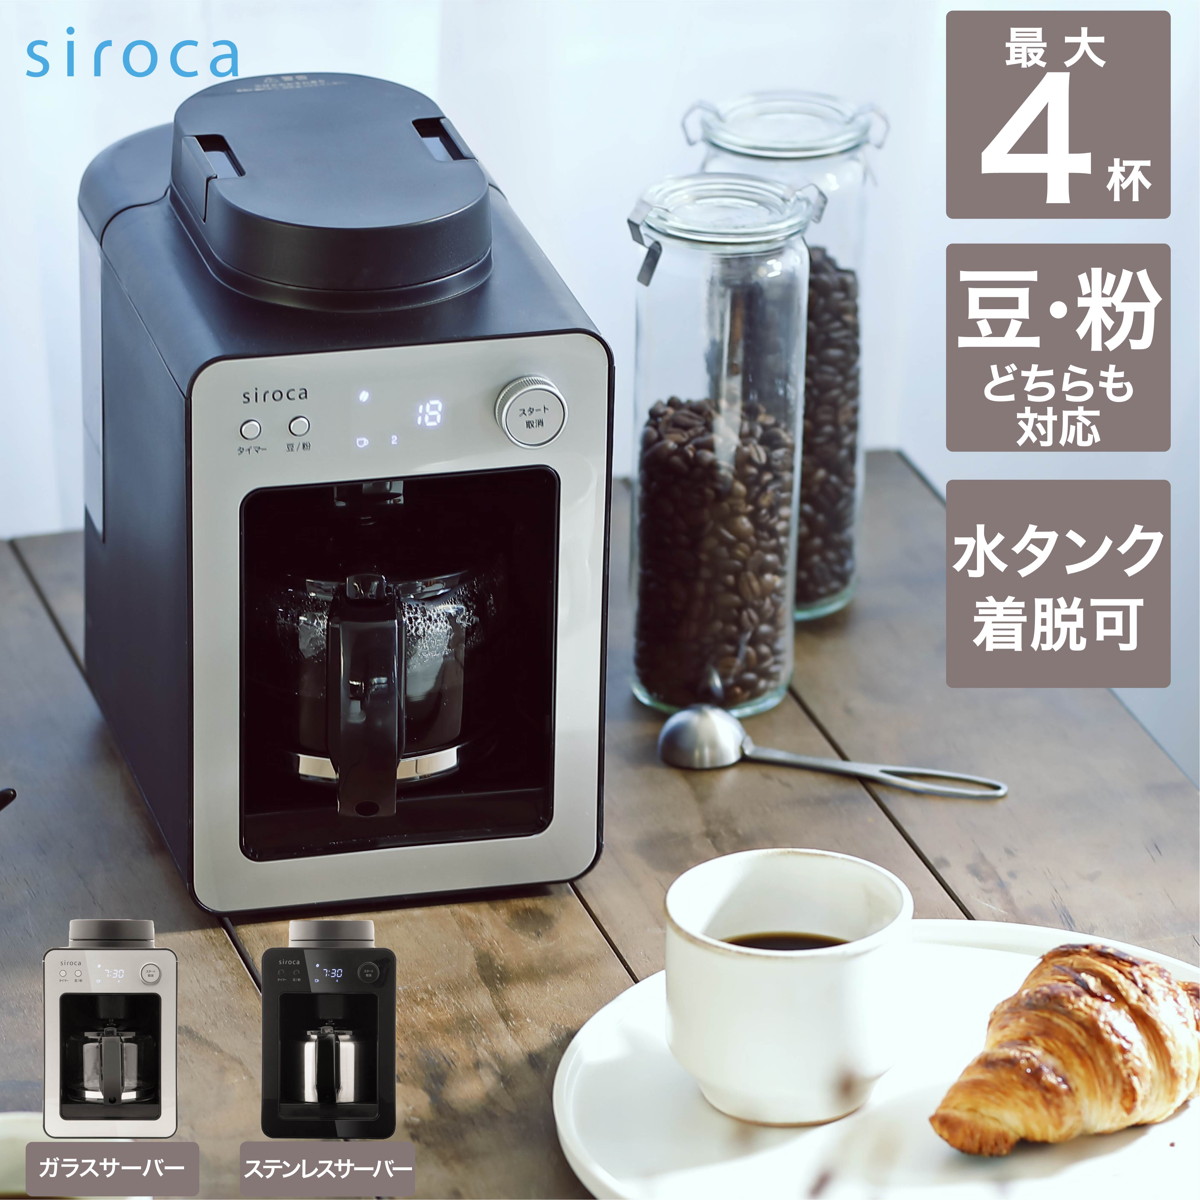 siroca 全自動コーヒーメーカー カフェばこ ガラスサーバー 静音 ミル4段階 コンパクト 豆・粉両対応 蒸らし タイマー機能 シルバー